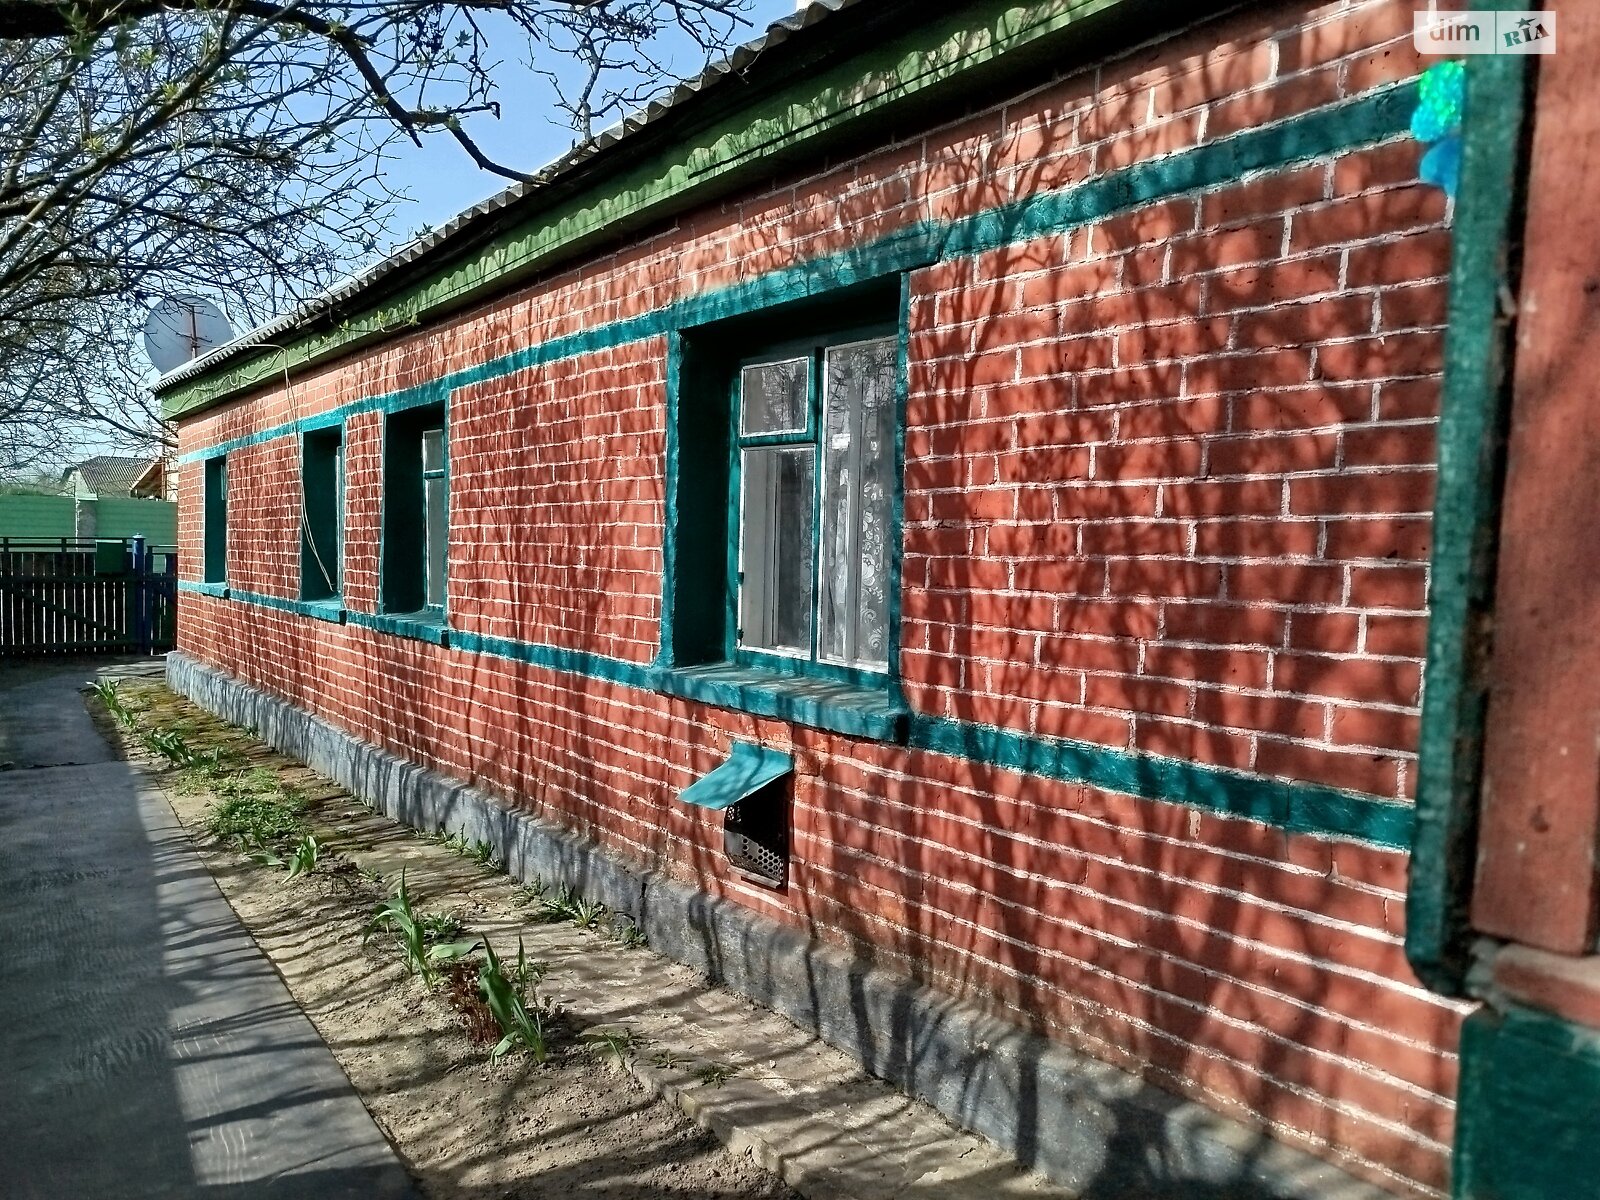 Продажа части дома в Малине, улица 10 отдельной горно-штурмовой бригады (Суворова), район Малин, 1 комната фото 1